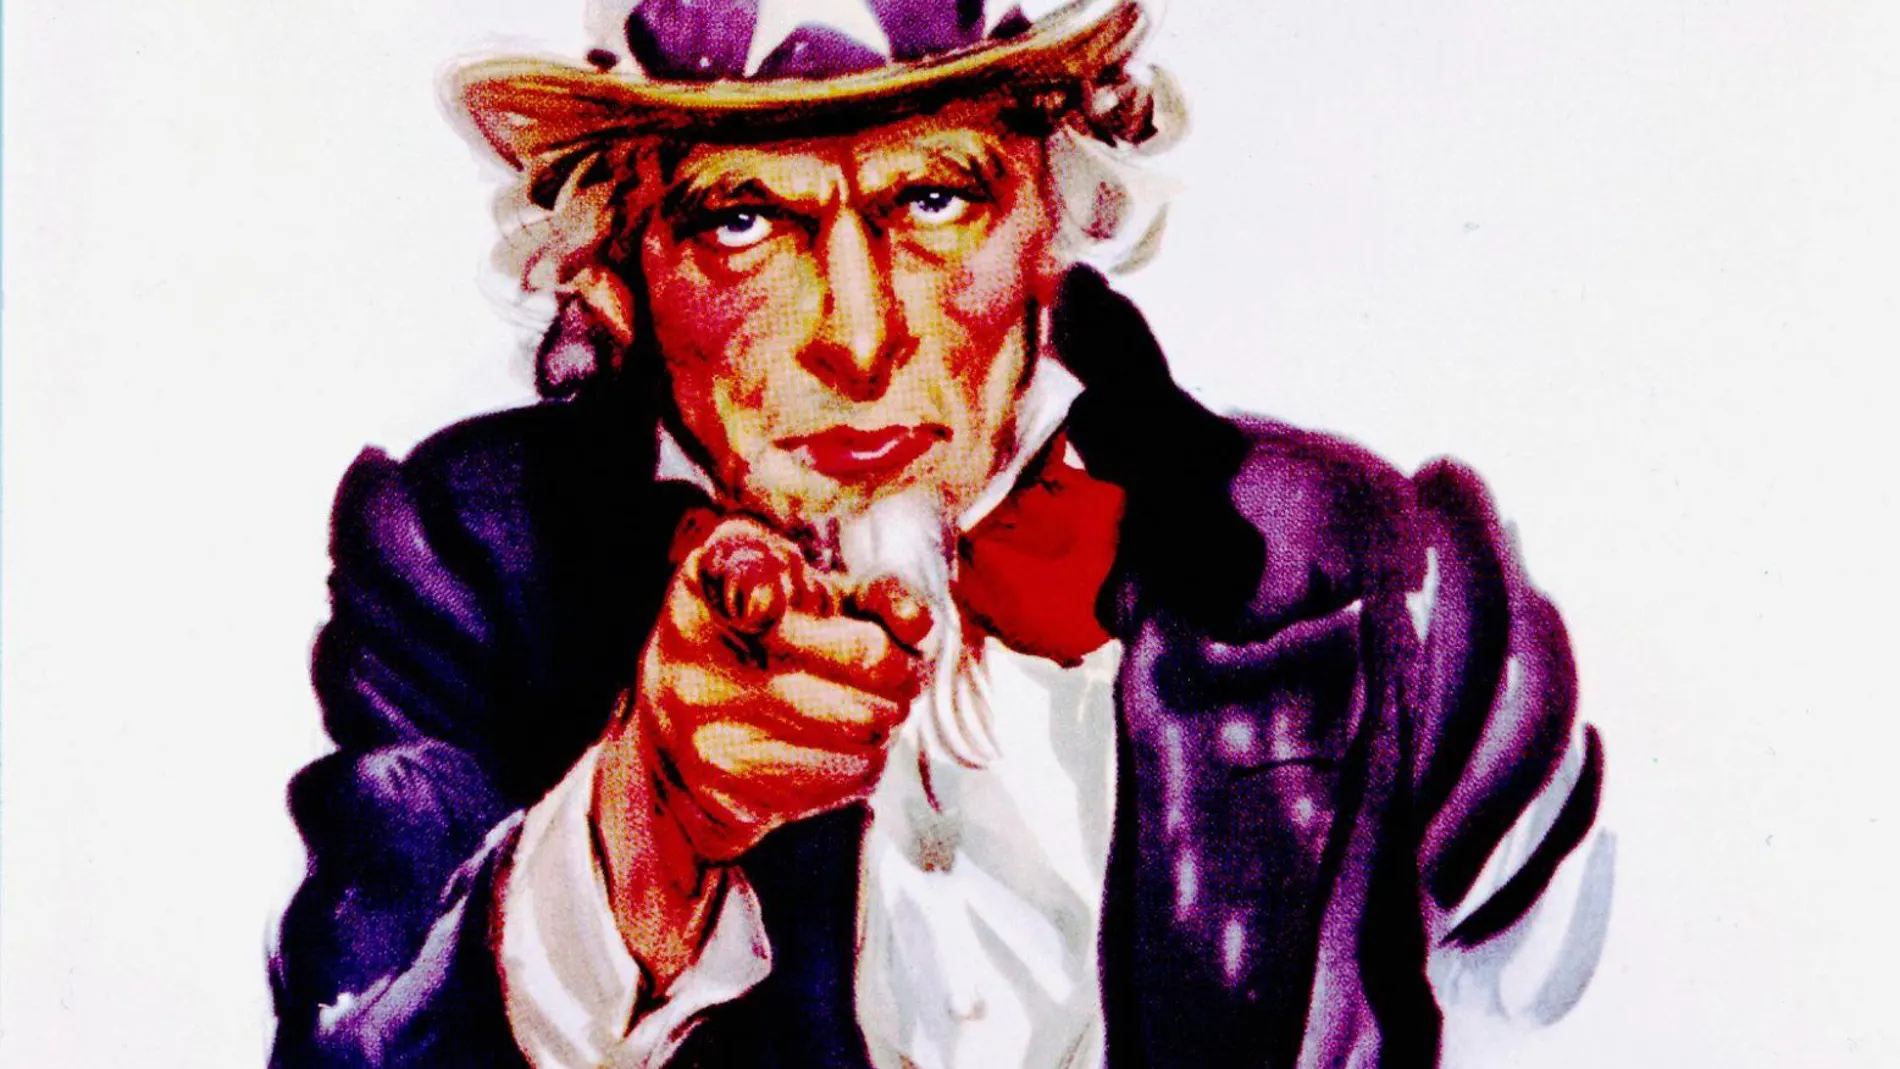 Uncle Sam, el famoso cartel reclamo para alistar jóvenes al Ejército de Estados Unidos